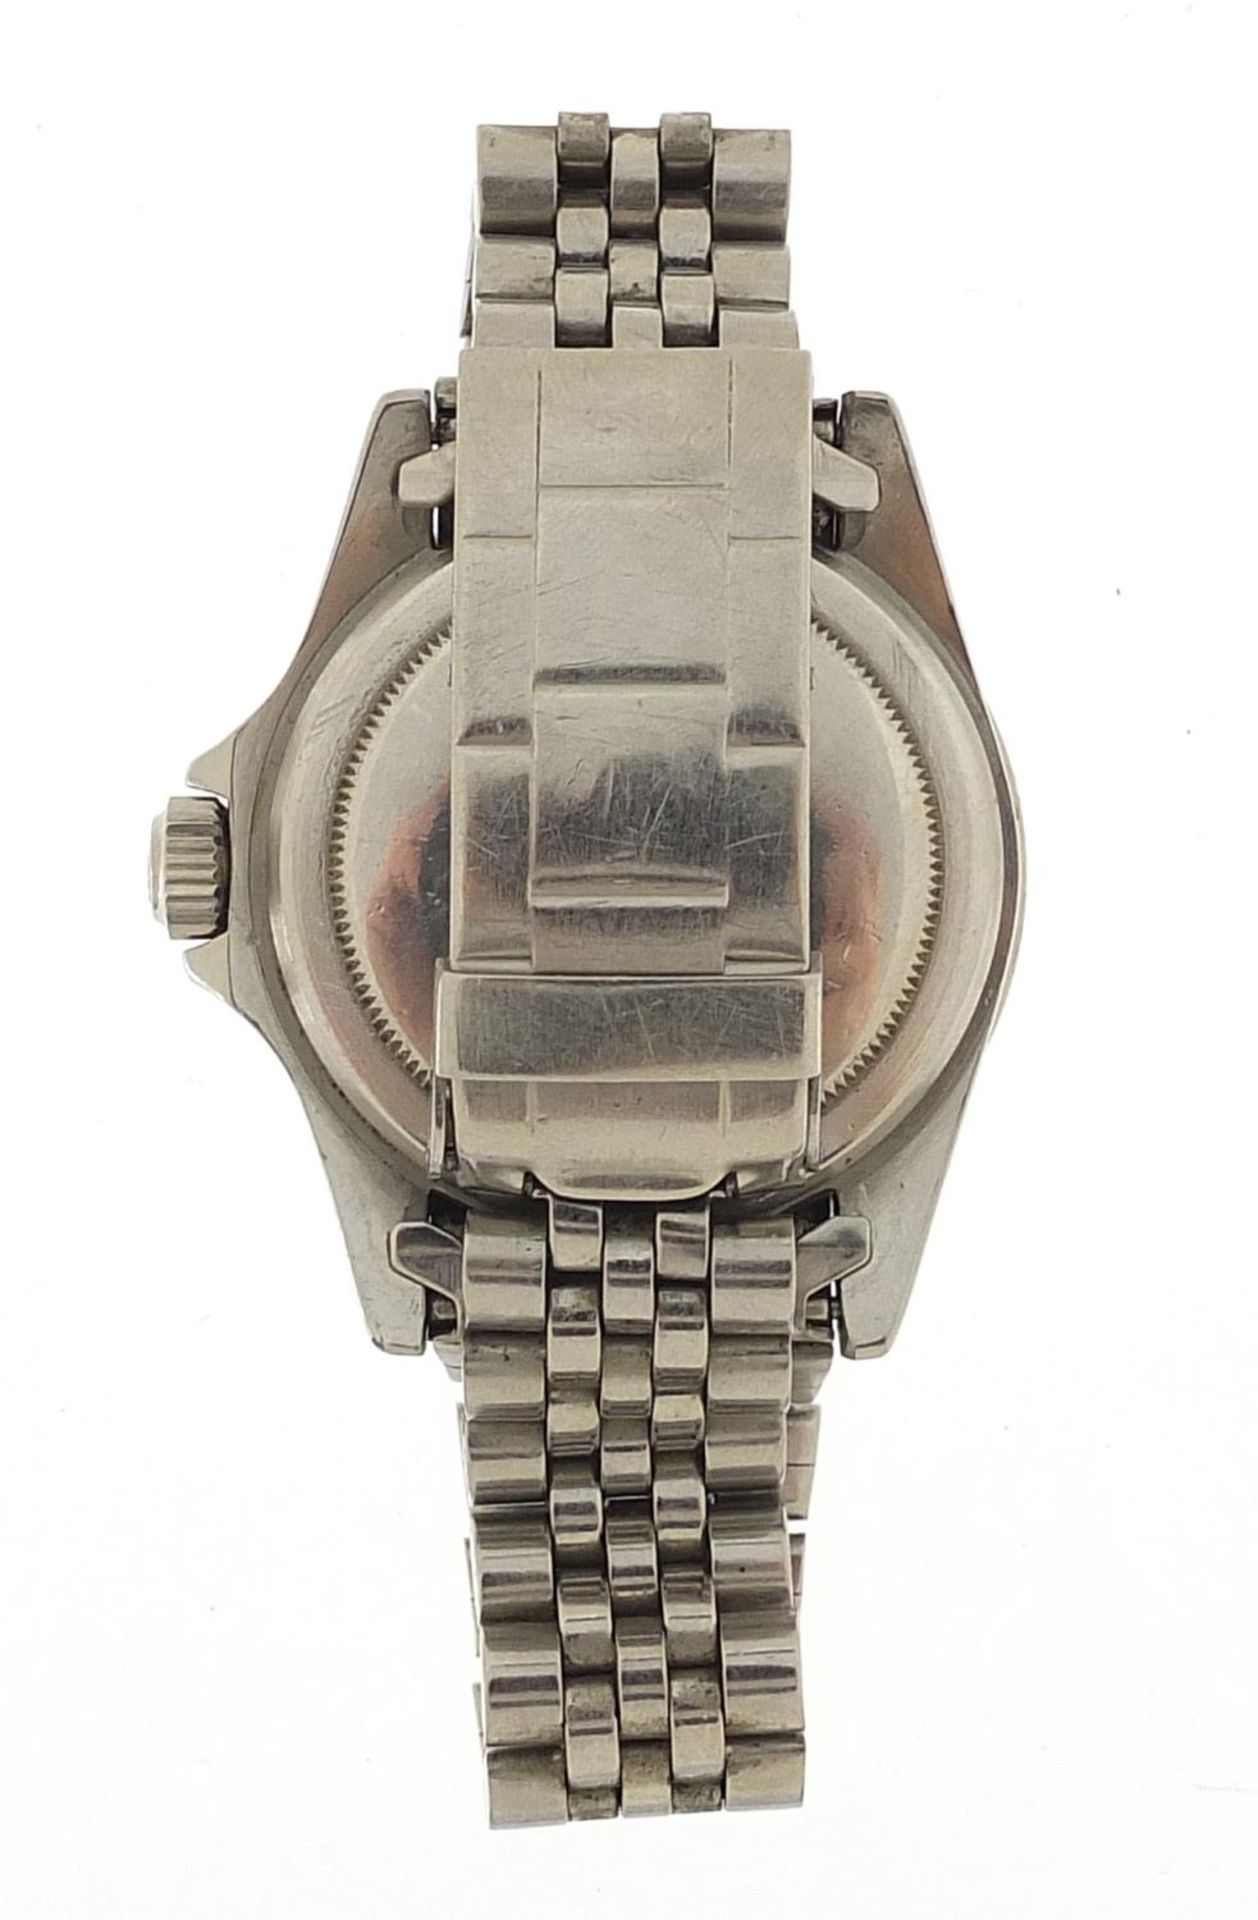 Rolex gentlemen's Submariner automatic wristwatch, ref 5513, serial number 1005684, 40mm in diameter - Bild 3 aus 9